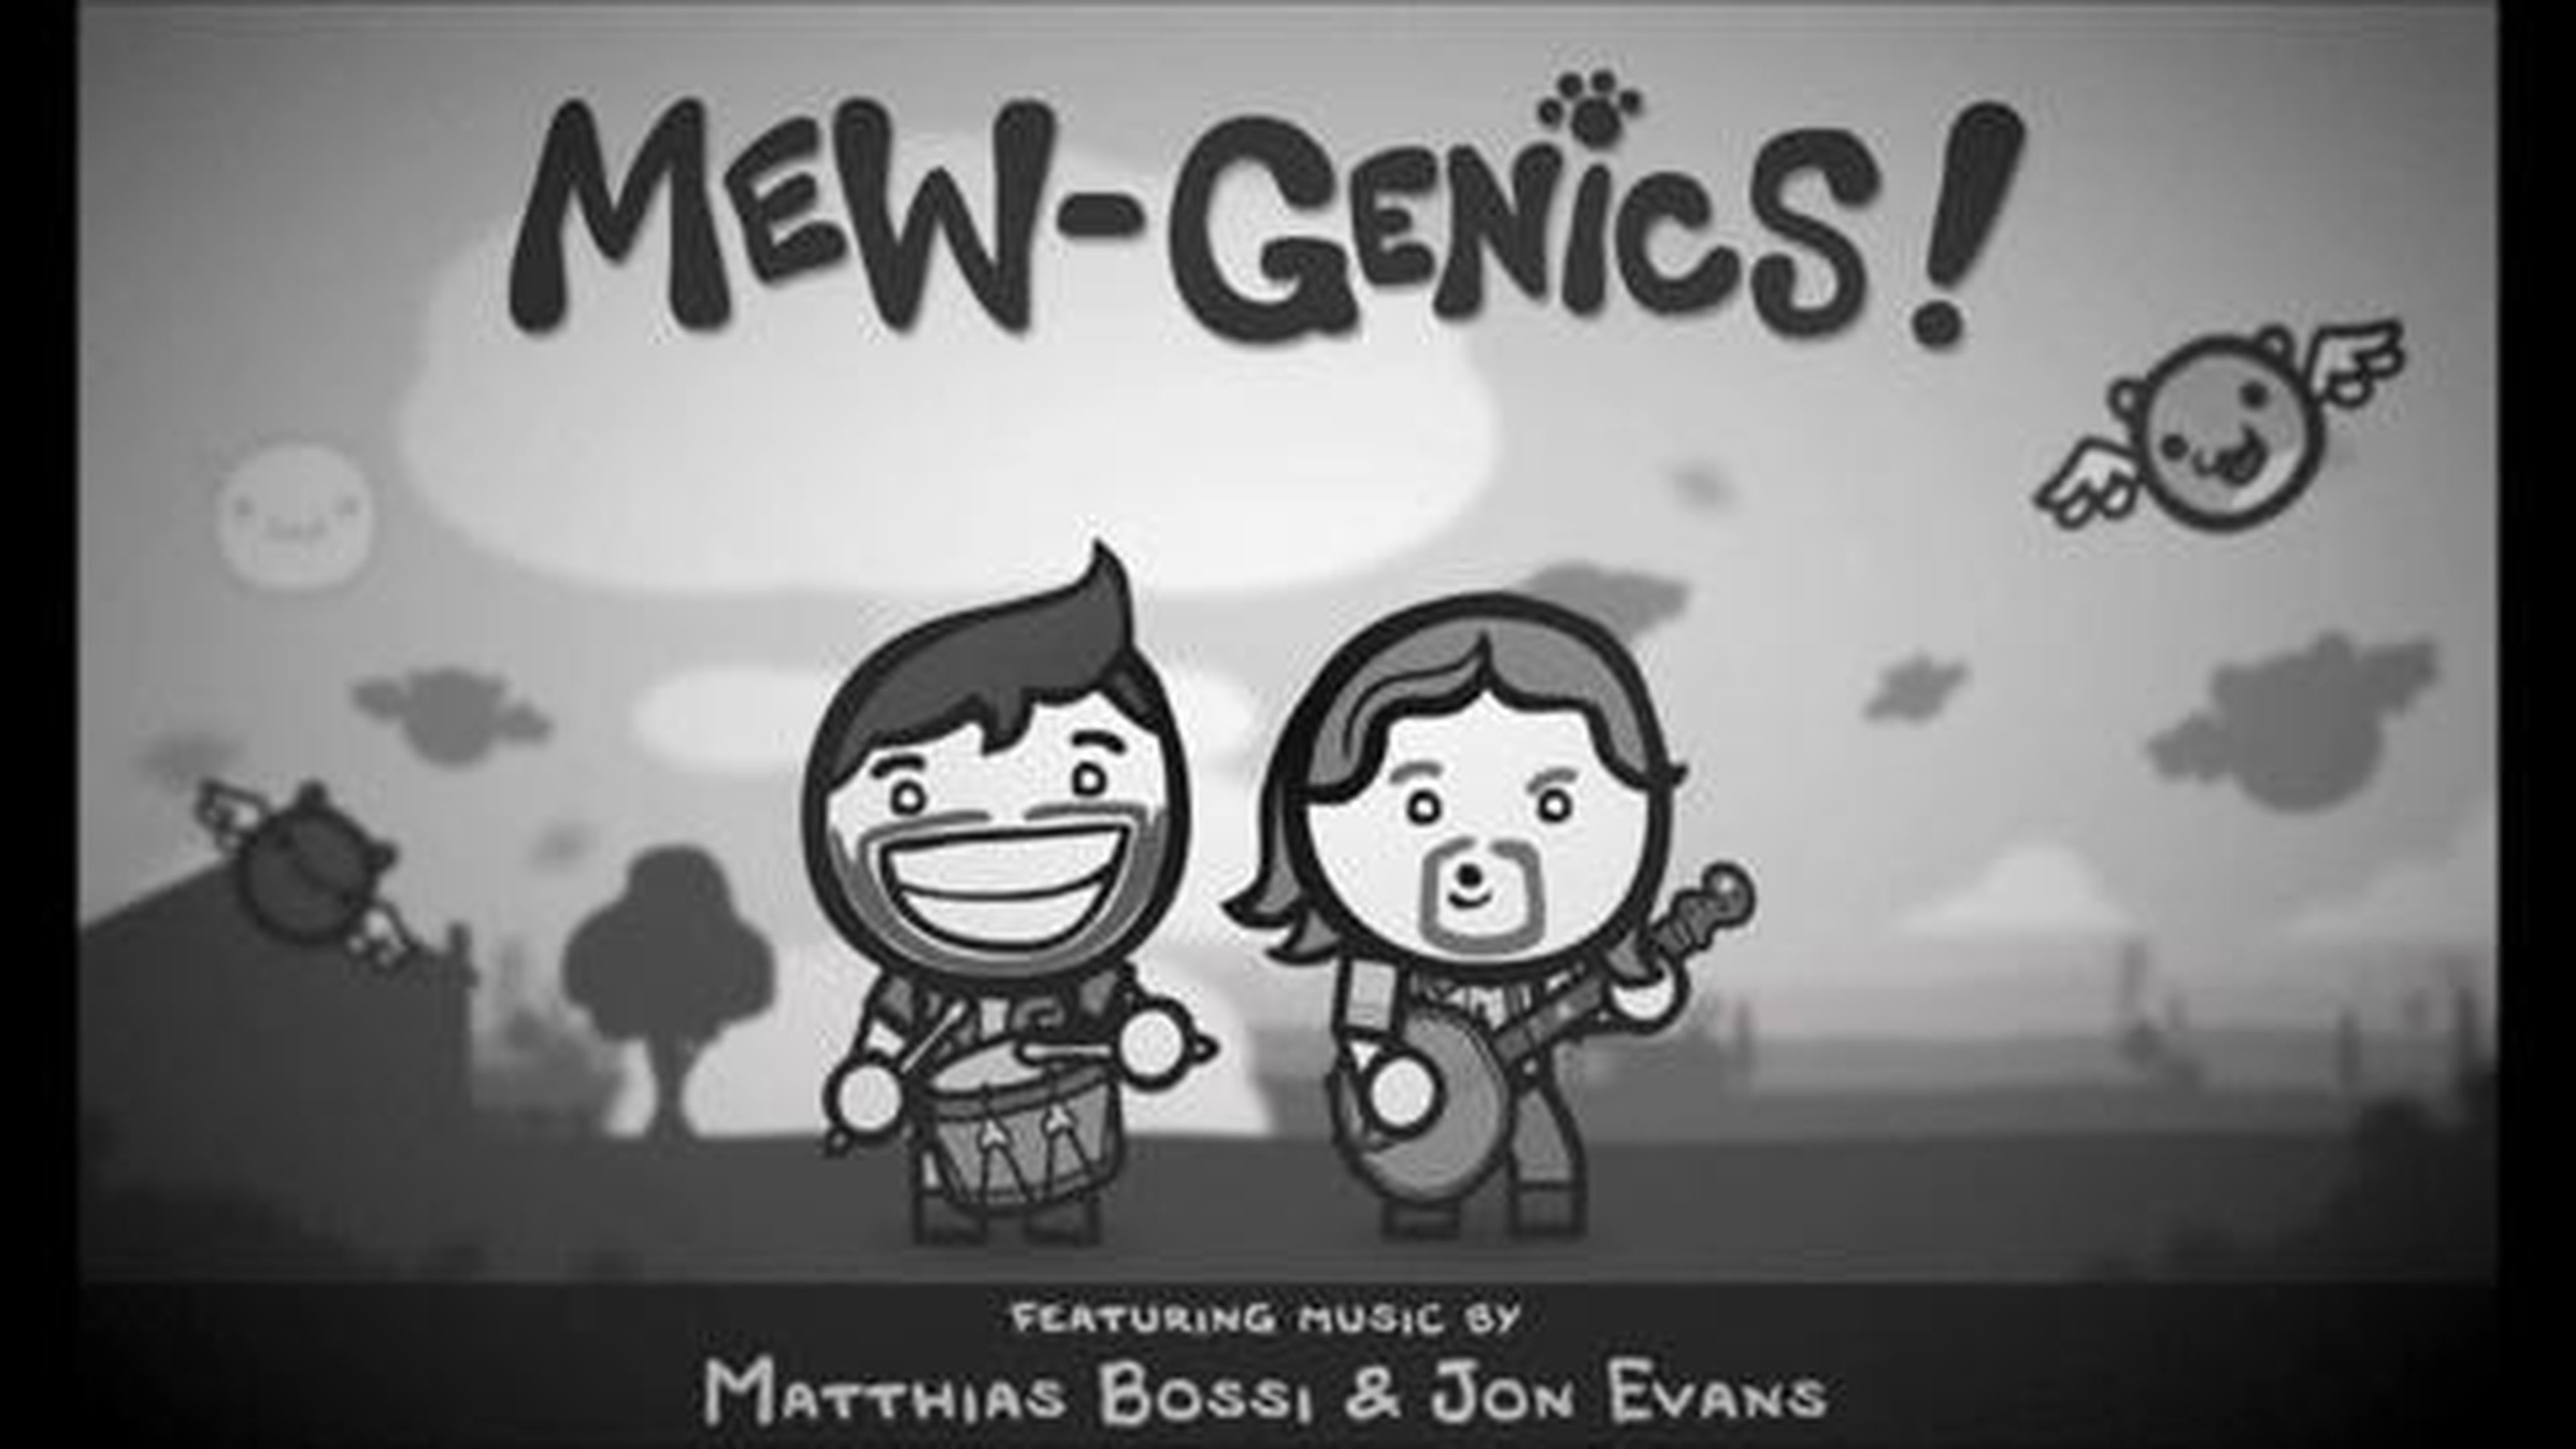 Mew-Genics a ritmo de Banjo y percusión en HobbyConsolas.com